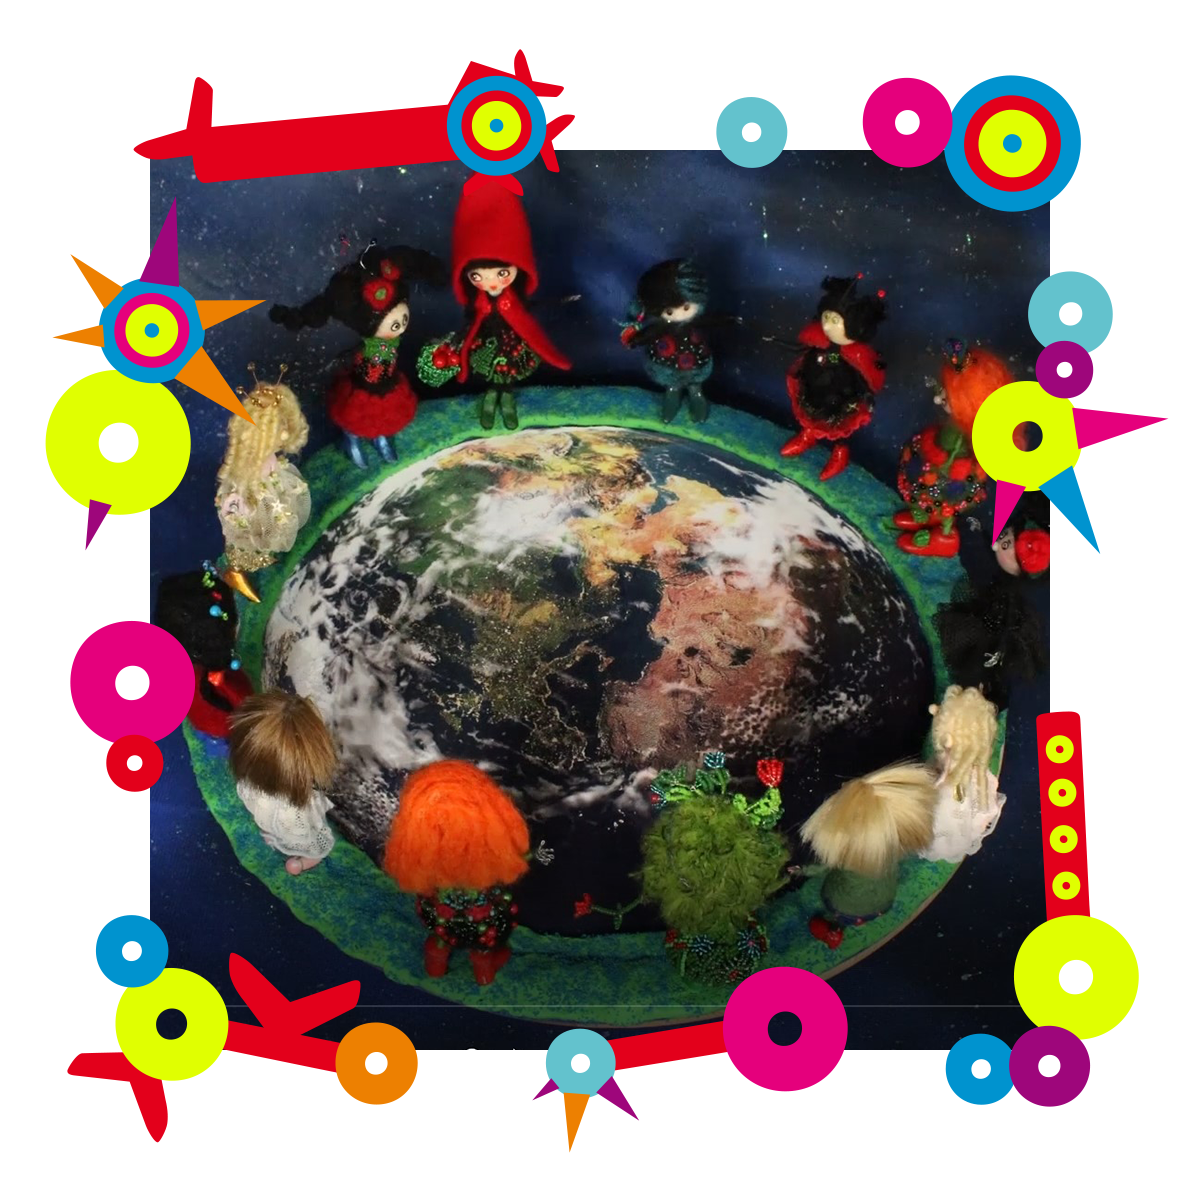 Dookoła makiety Ziemi ułożone są laleczki w ludowych strojach. Zdjęcie znajduje się w kolorowej ramce.